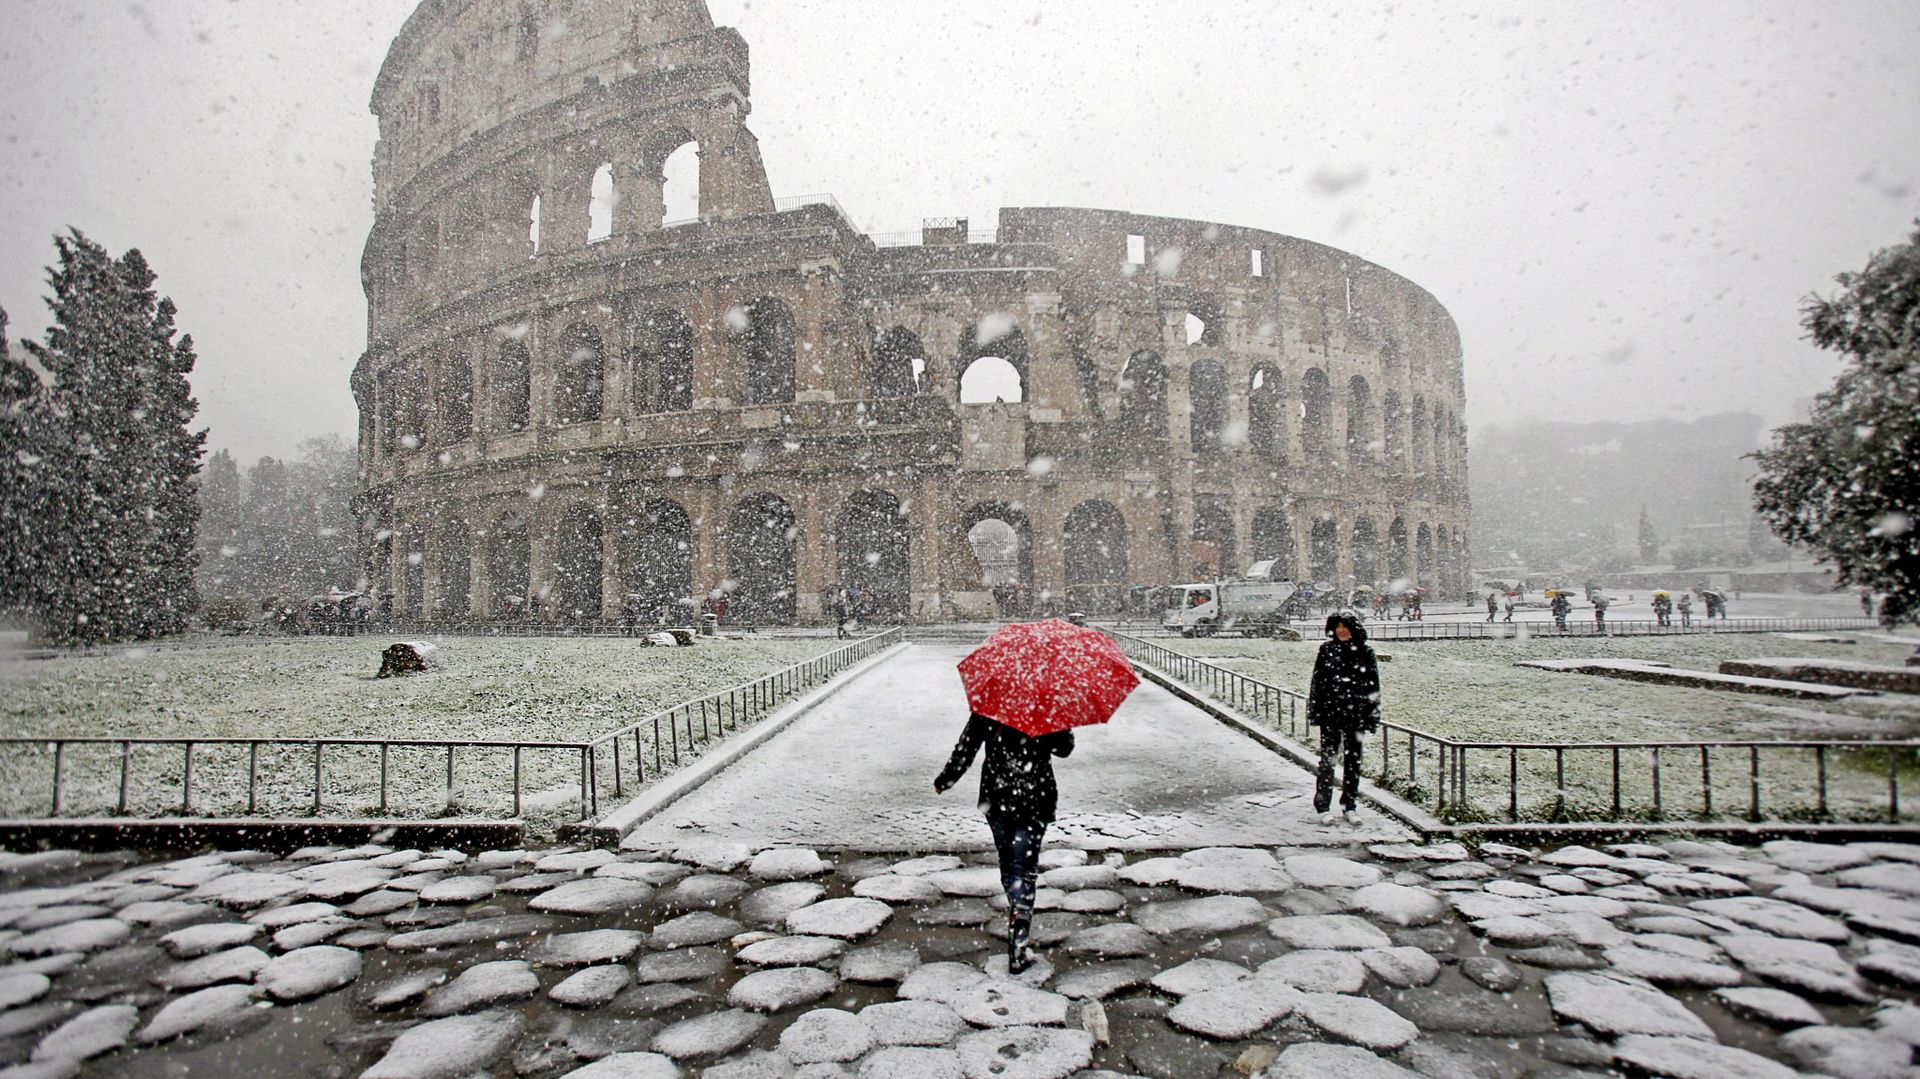 La neige à Rome, c'est exceptionnel, même si cela s'était déjà produit en 2010